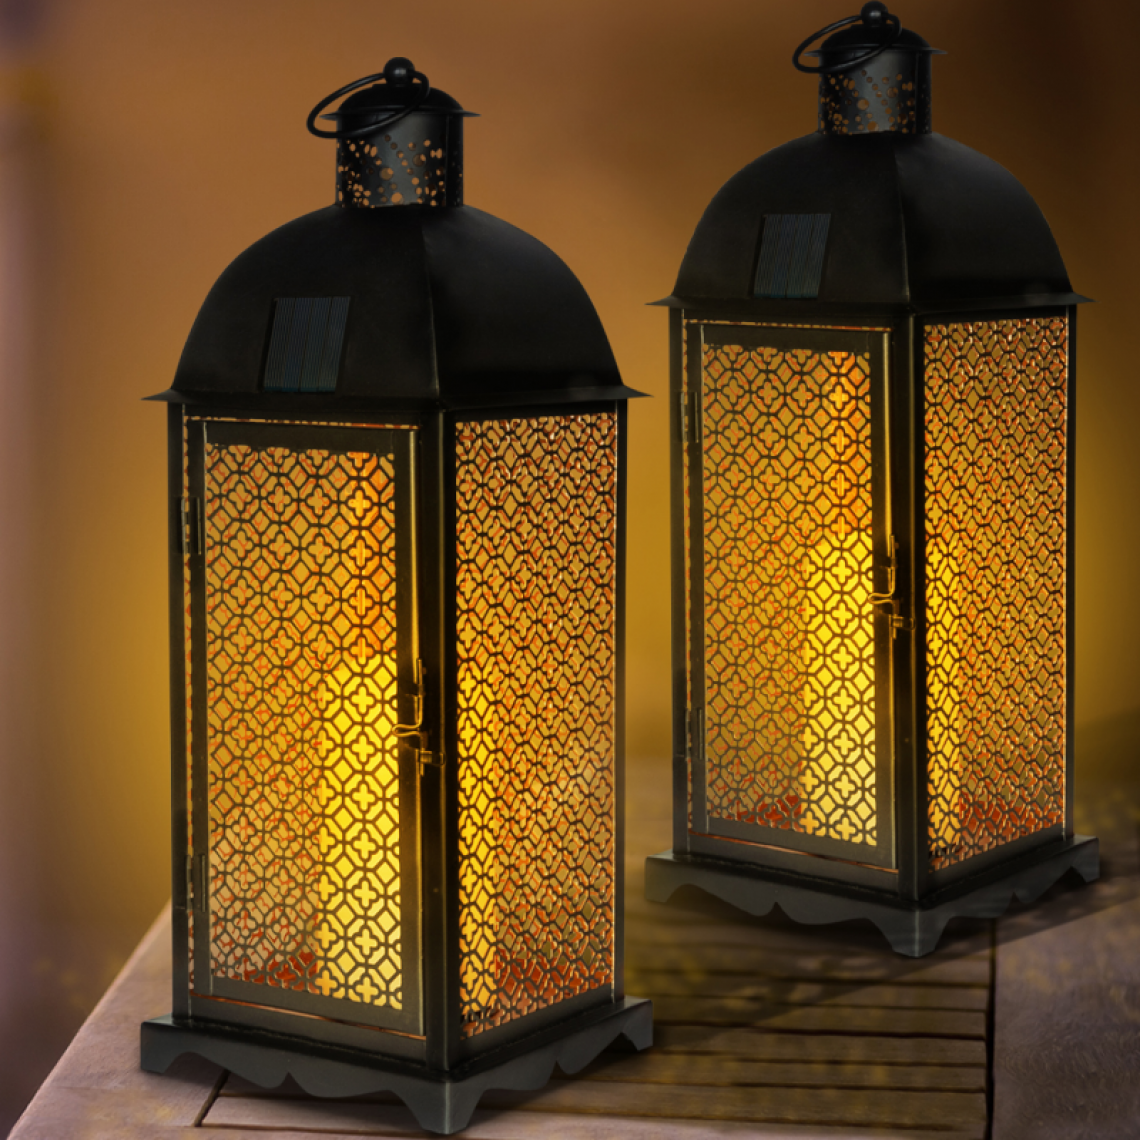 Idmarket - Lot de 2 lanternes solaires métal noir bougies à LED motif oriental - Eclairage solaire